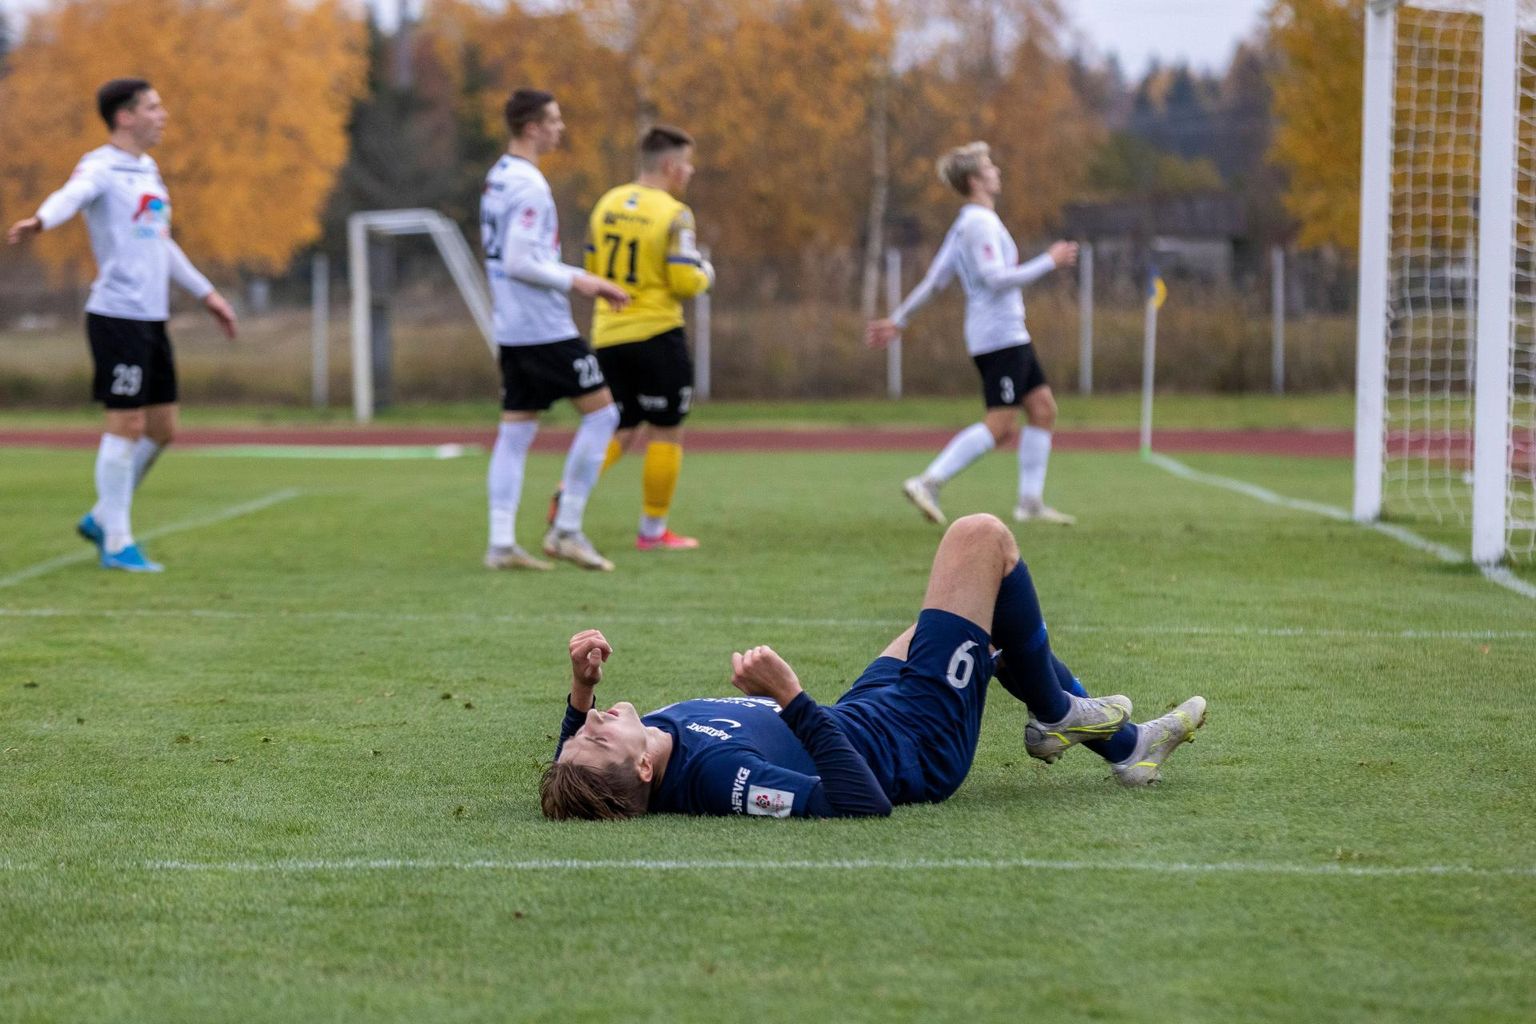 Paide linnameeskond on sel hooajal JK Tallinna Kalevit kolm korda suurelt võitnud, kuid viimases mängus pidi leppima kaotusega.